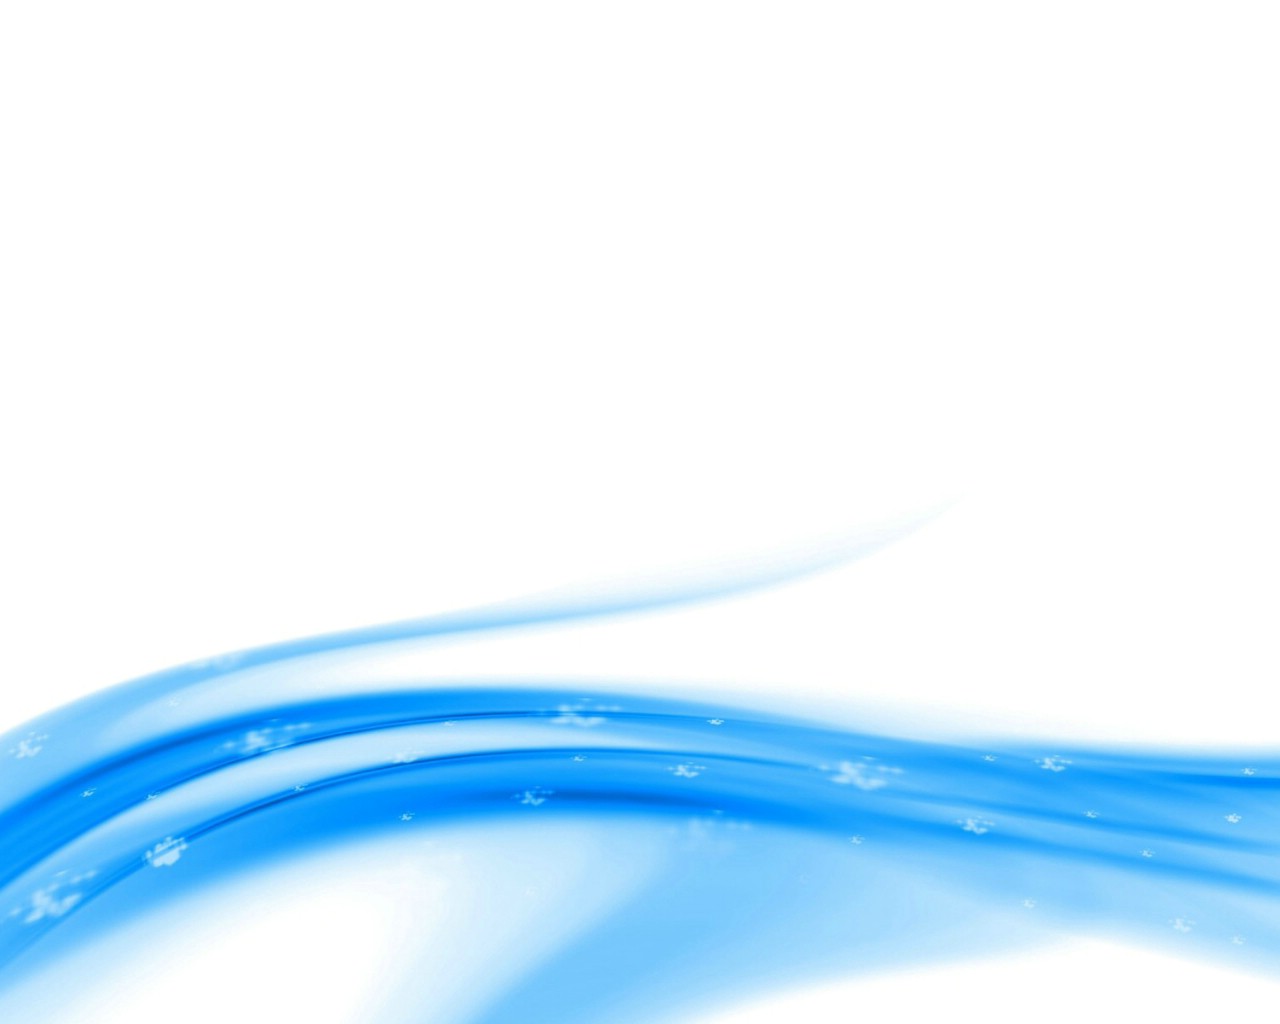 壁纸1280x1024 蓝色系 抽象蓝色CG壁纸 1920 1200壁纸 蓝色系-蓝调主题抽象CG背景壁纸 蓝色系-蓝调主题抽象CG背景图片 蓝色系-蓝调主题抽象CG背景素材 插画壁纸 插画图库 插画图片素材桌面壁纸